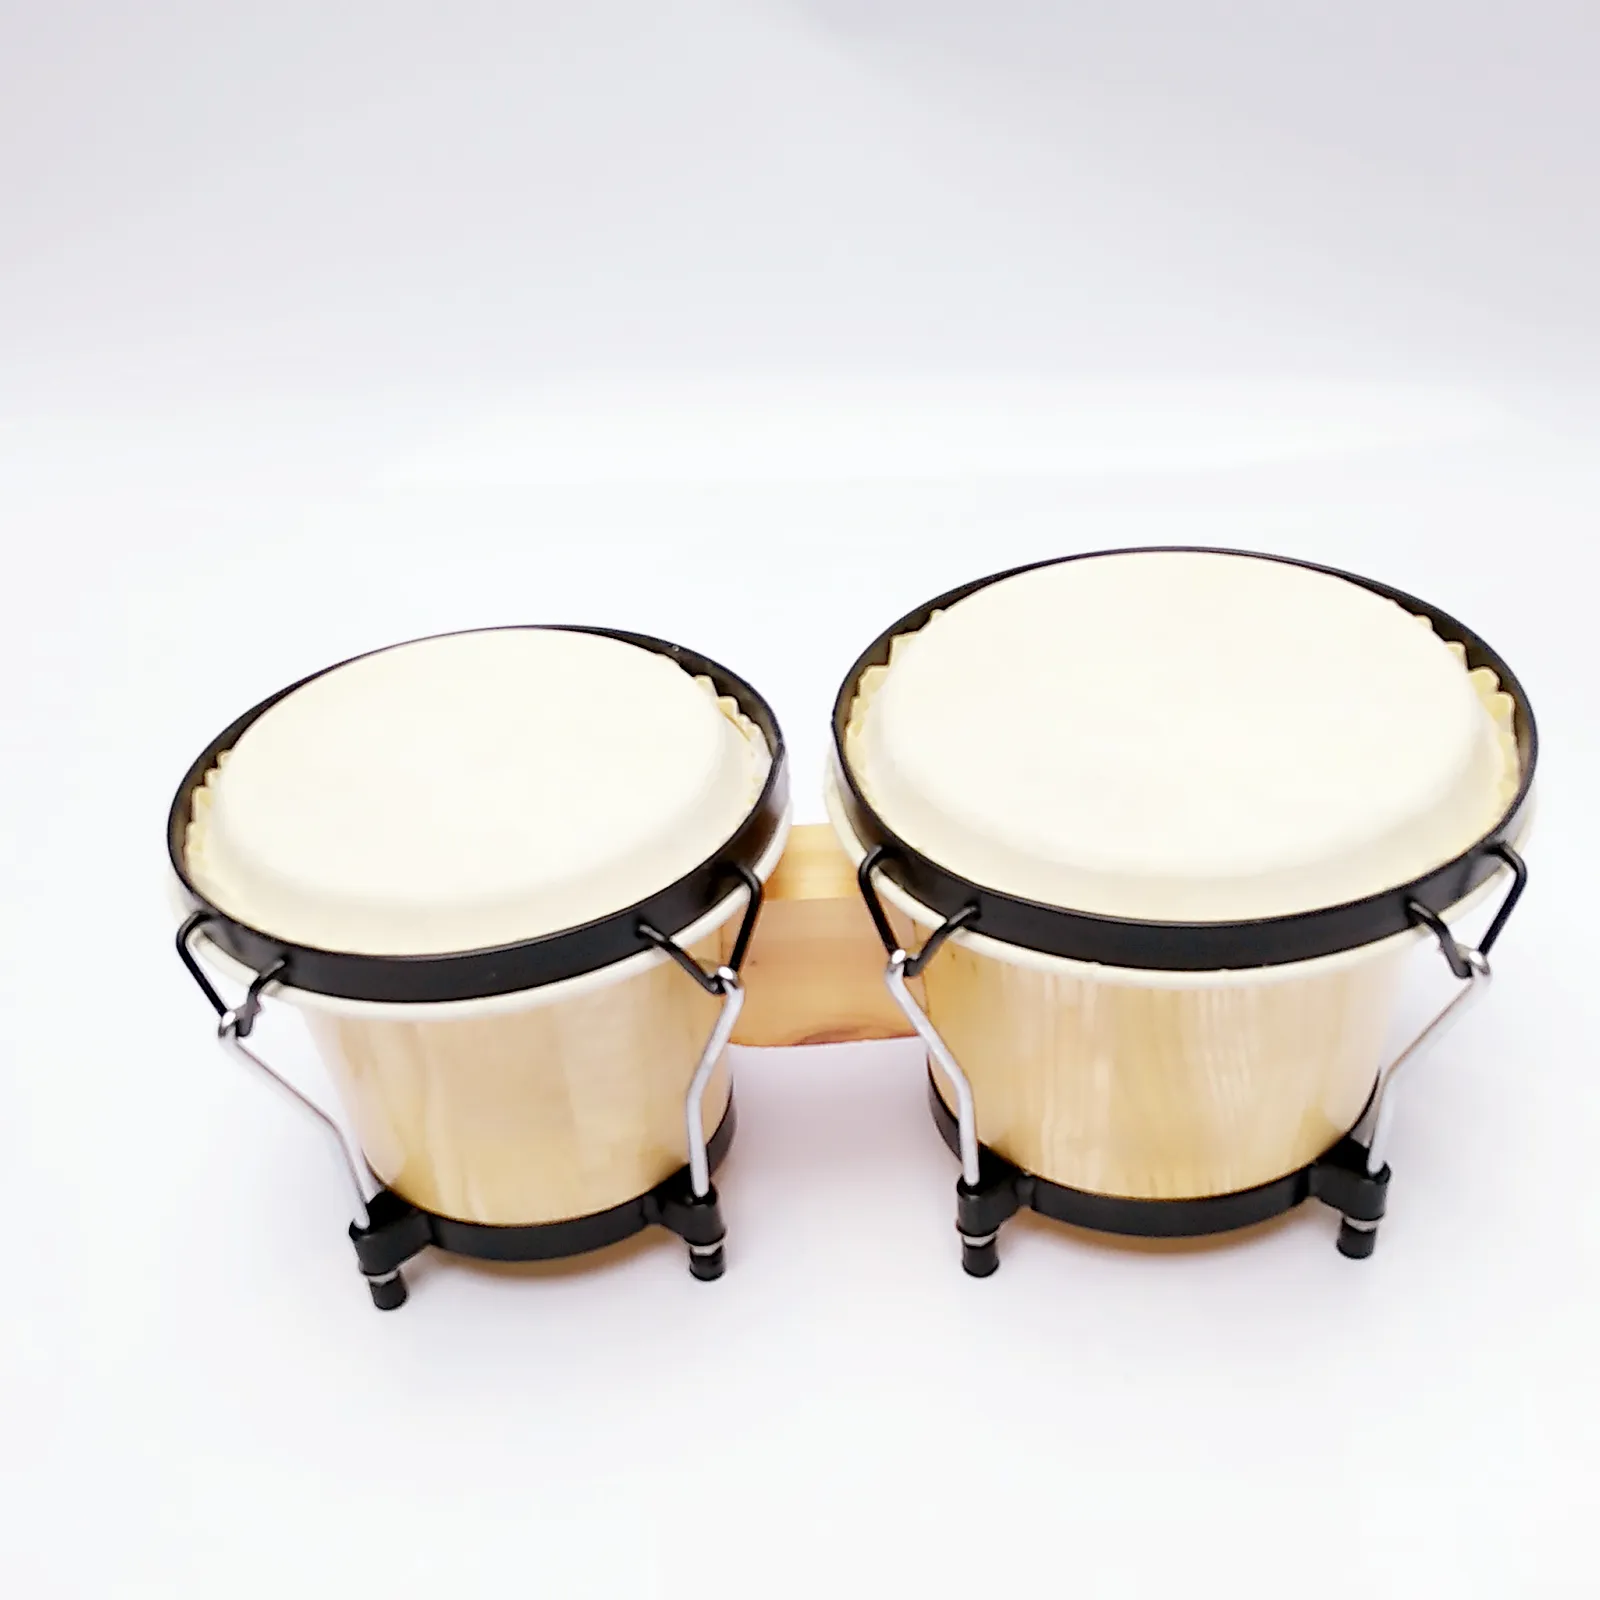 6 "7" de alta calidad, barato, instrumentos de percusión tambor